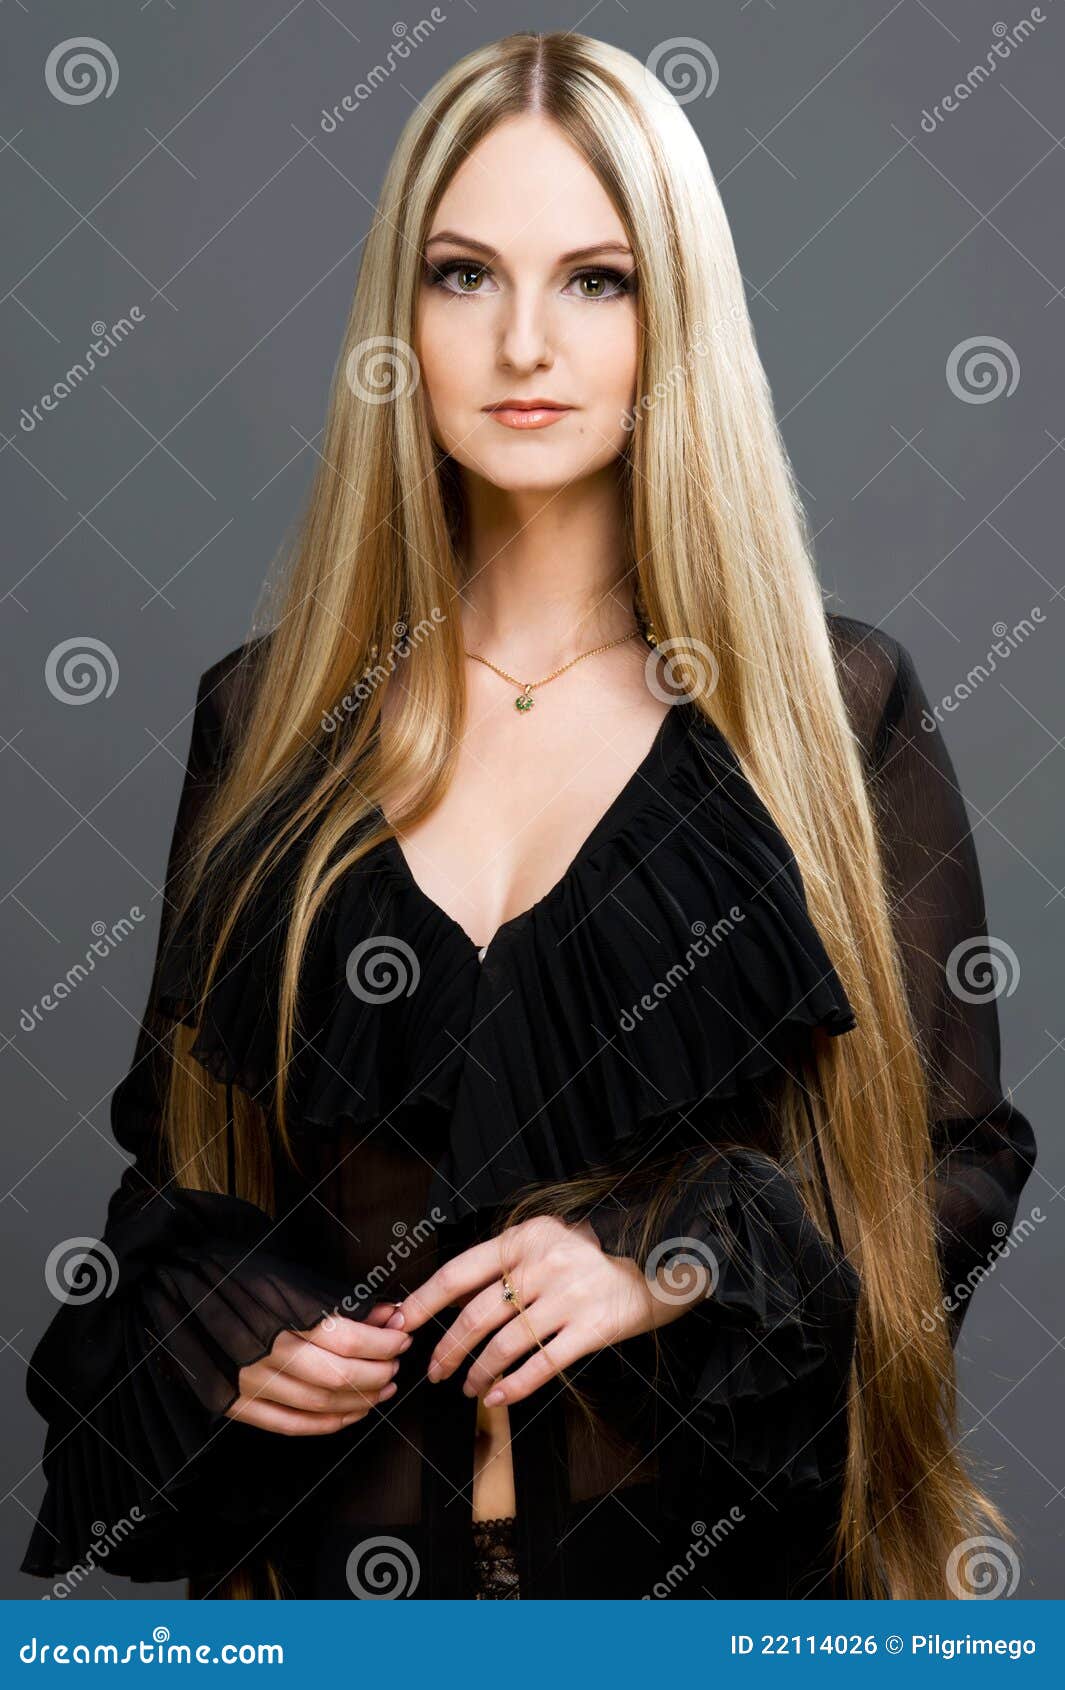 mulher-loura-bonita-com-cabelo-muito-longo-22114026.jpg